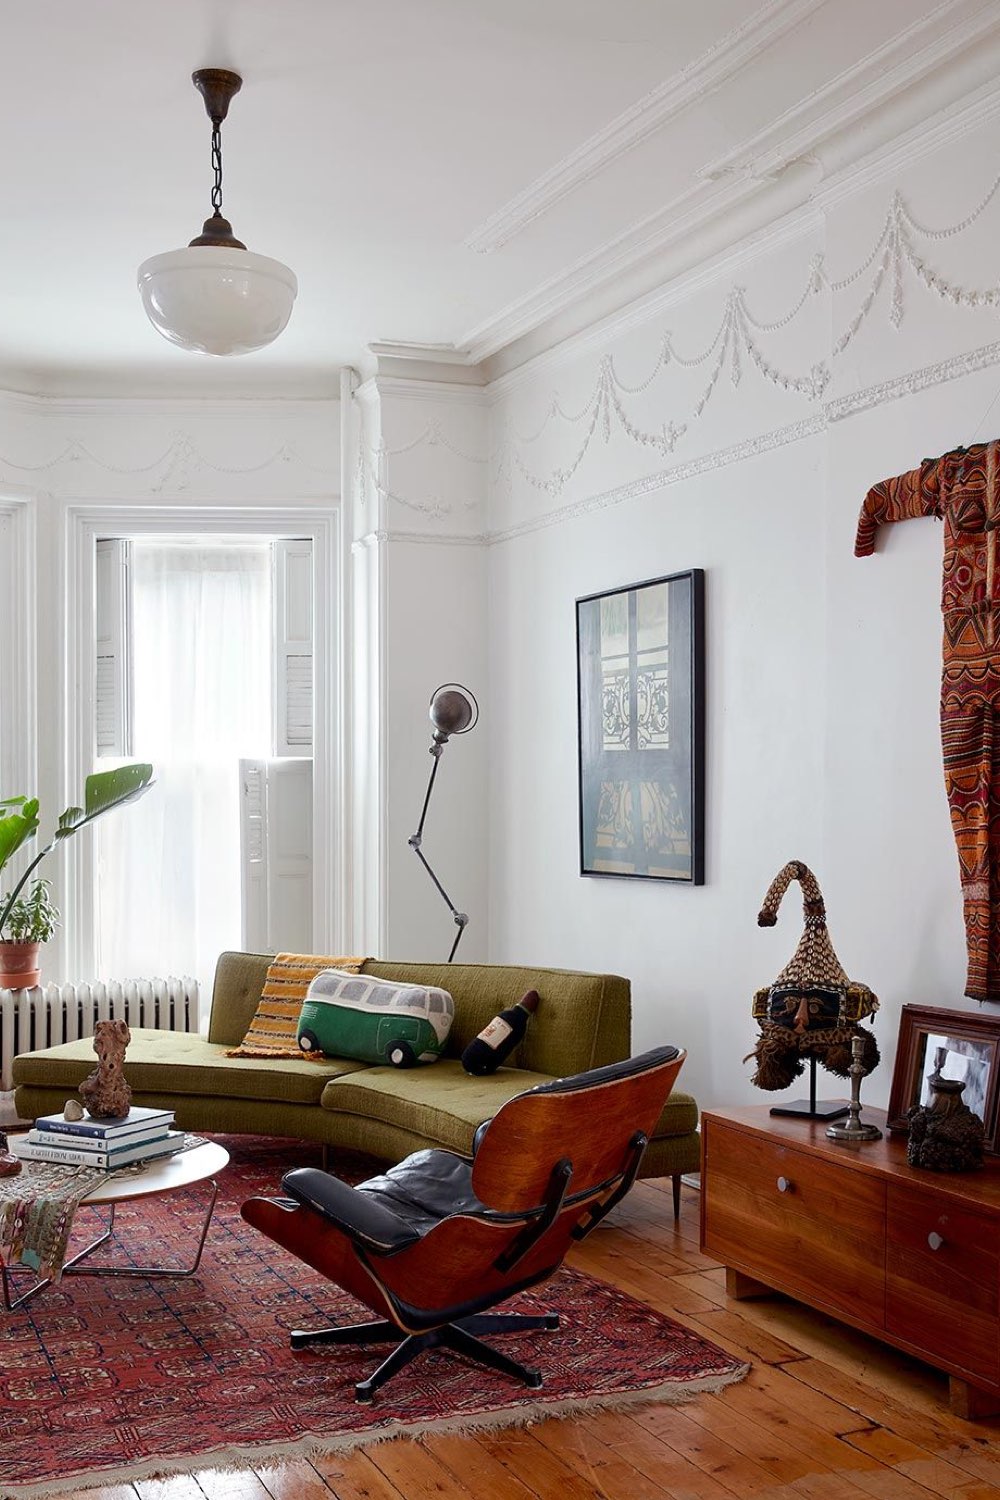 maison ancienne charme eclectique décoration de salon canapé arrondi vert fauteuil Eames mur blanc